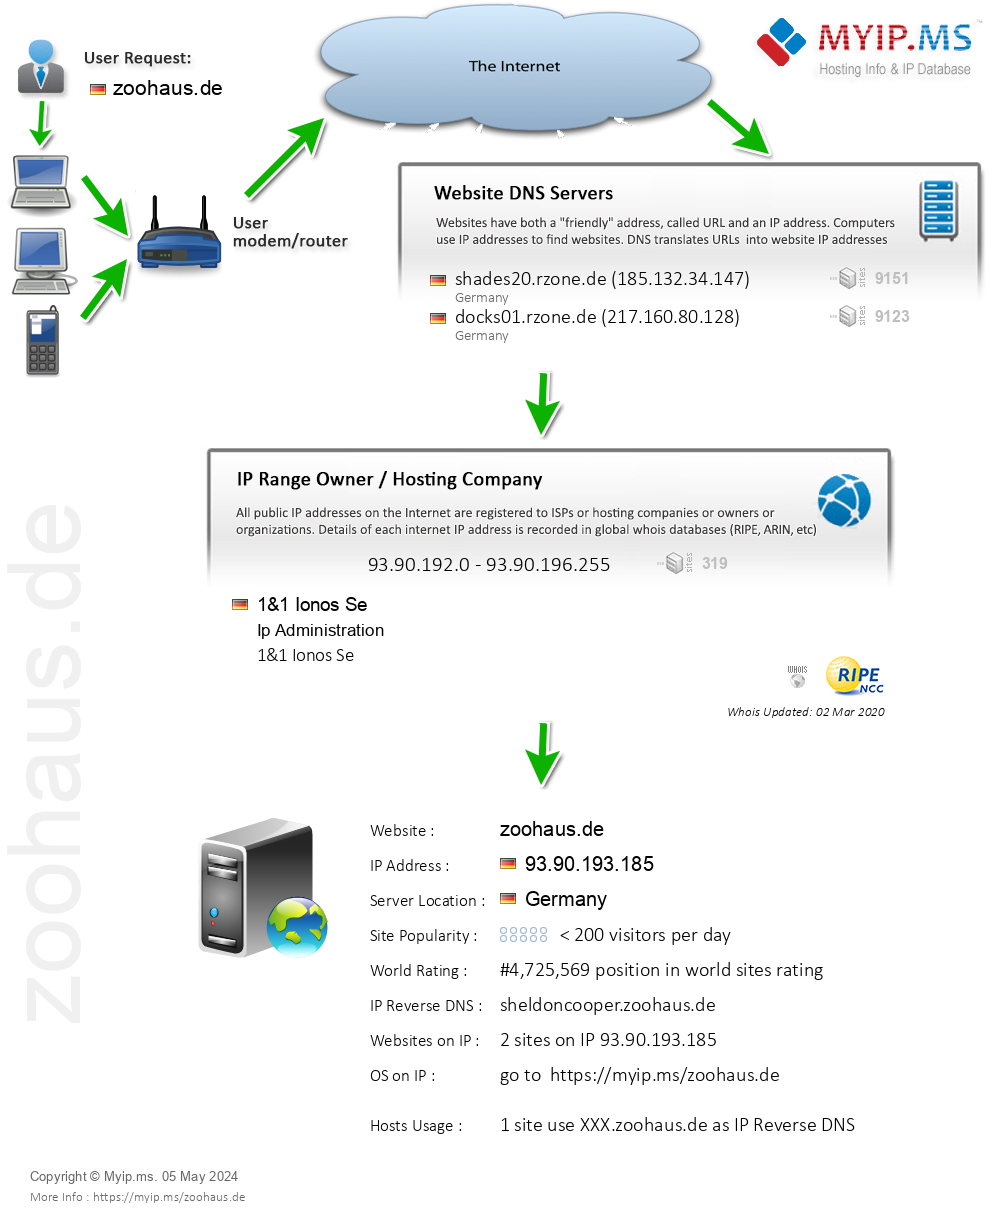 Zoohaus.de - Website Hosting Visual IP Diagram